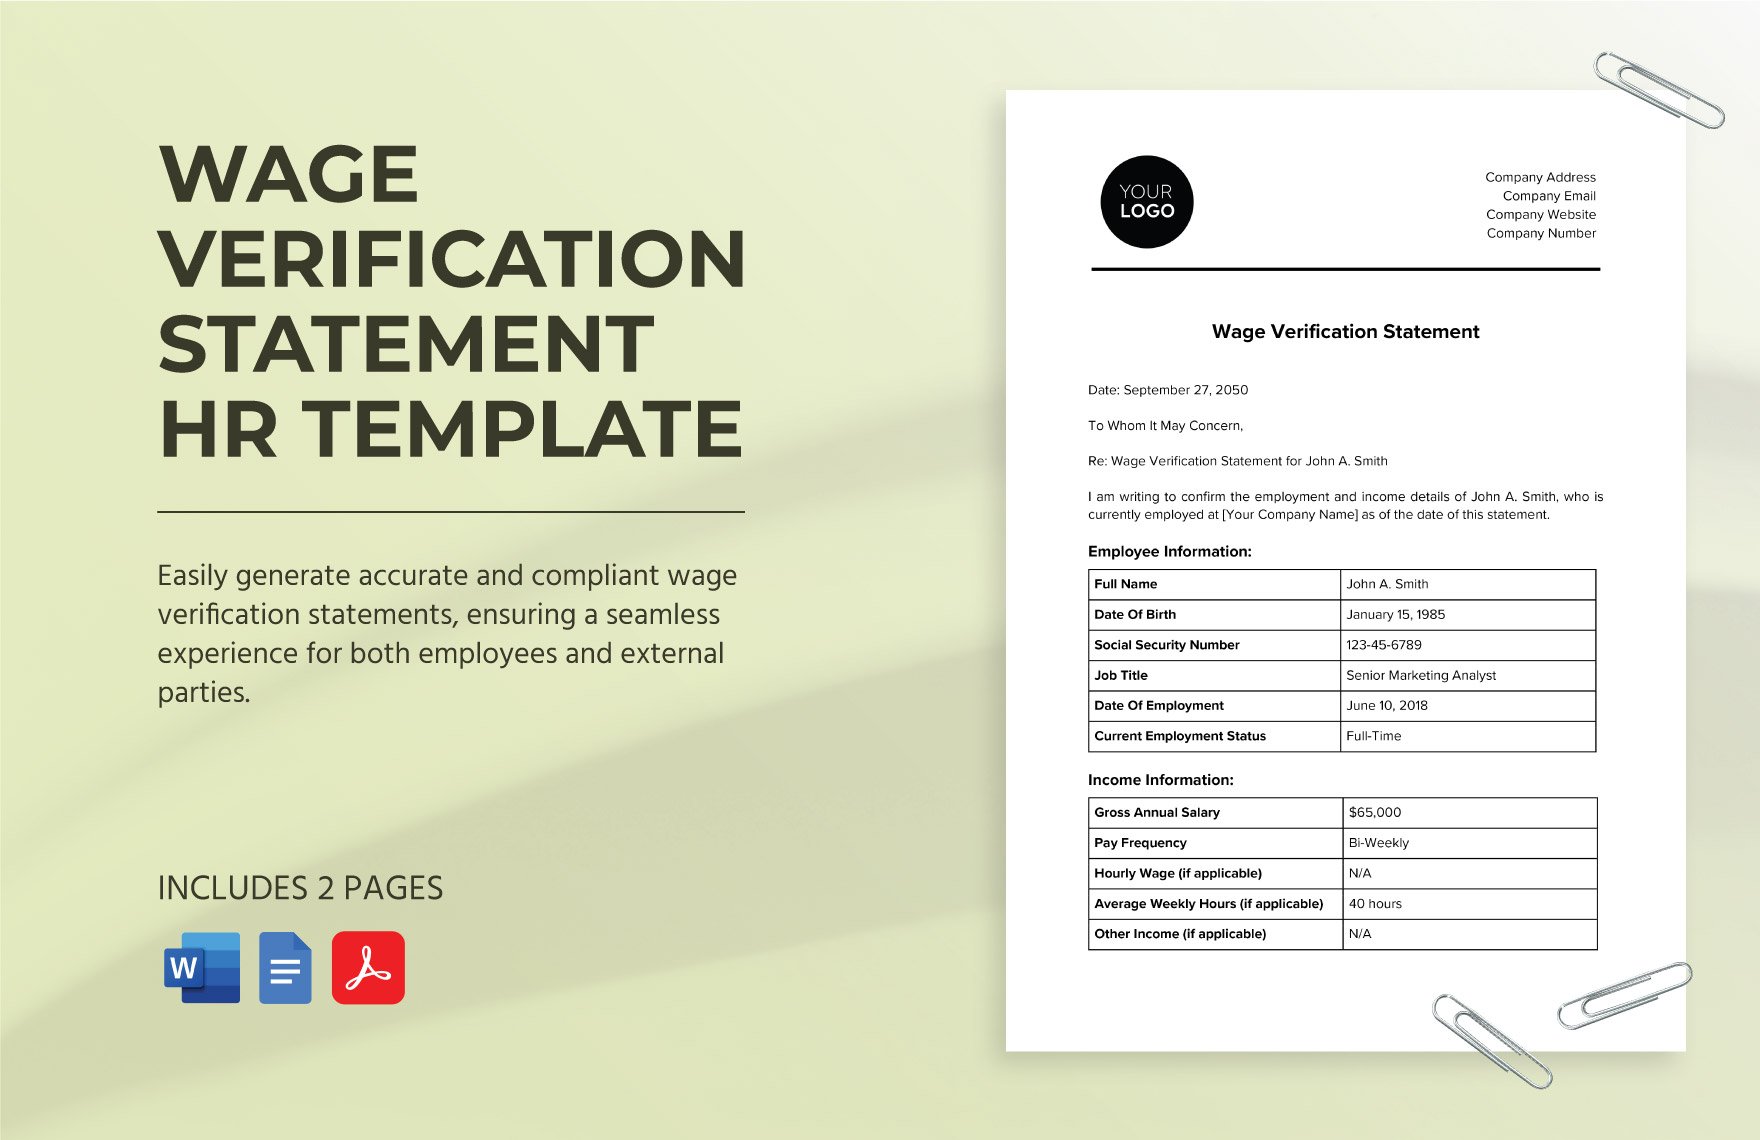 Wage Verification Statement HR Template